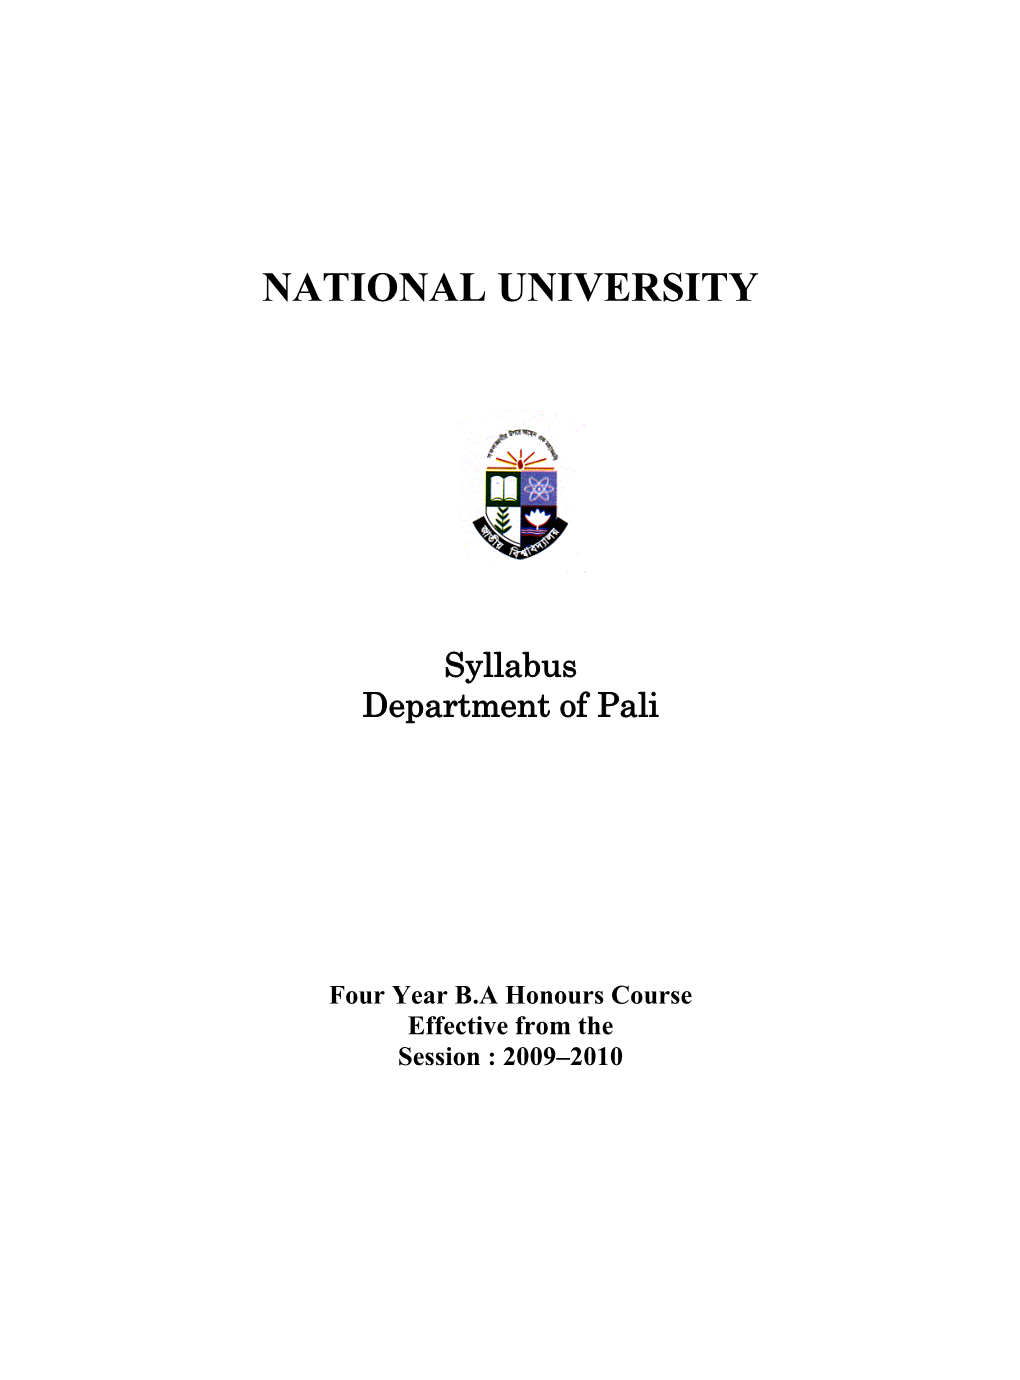 Syllabus Department of Pali